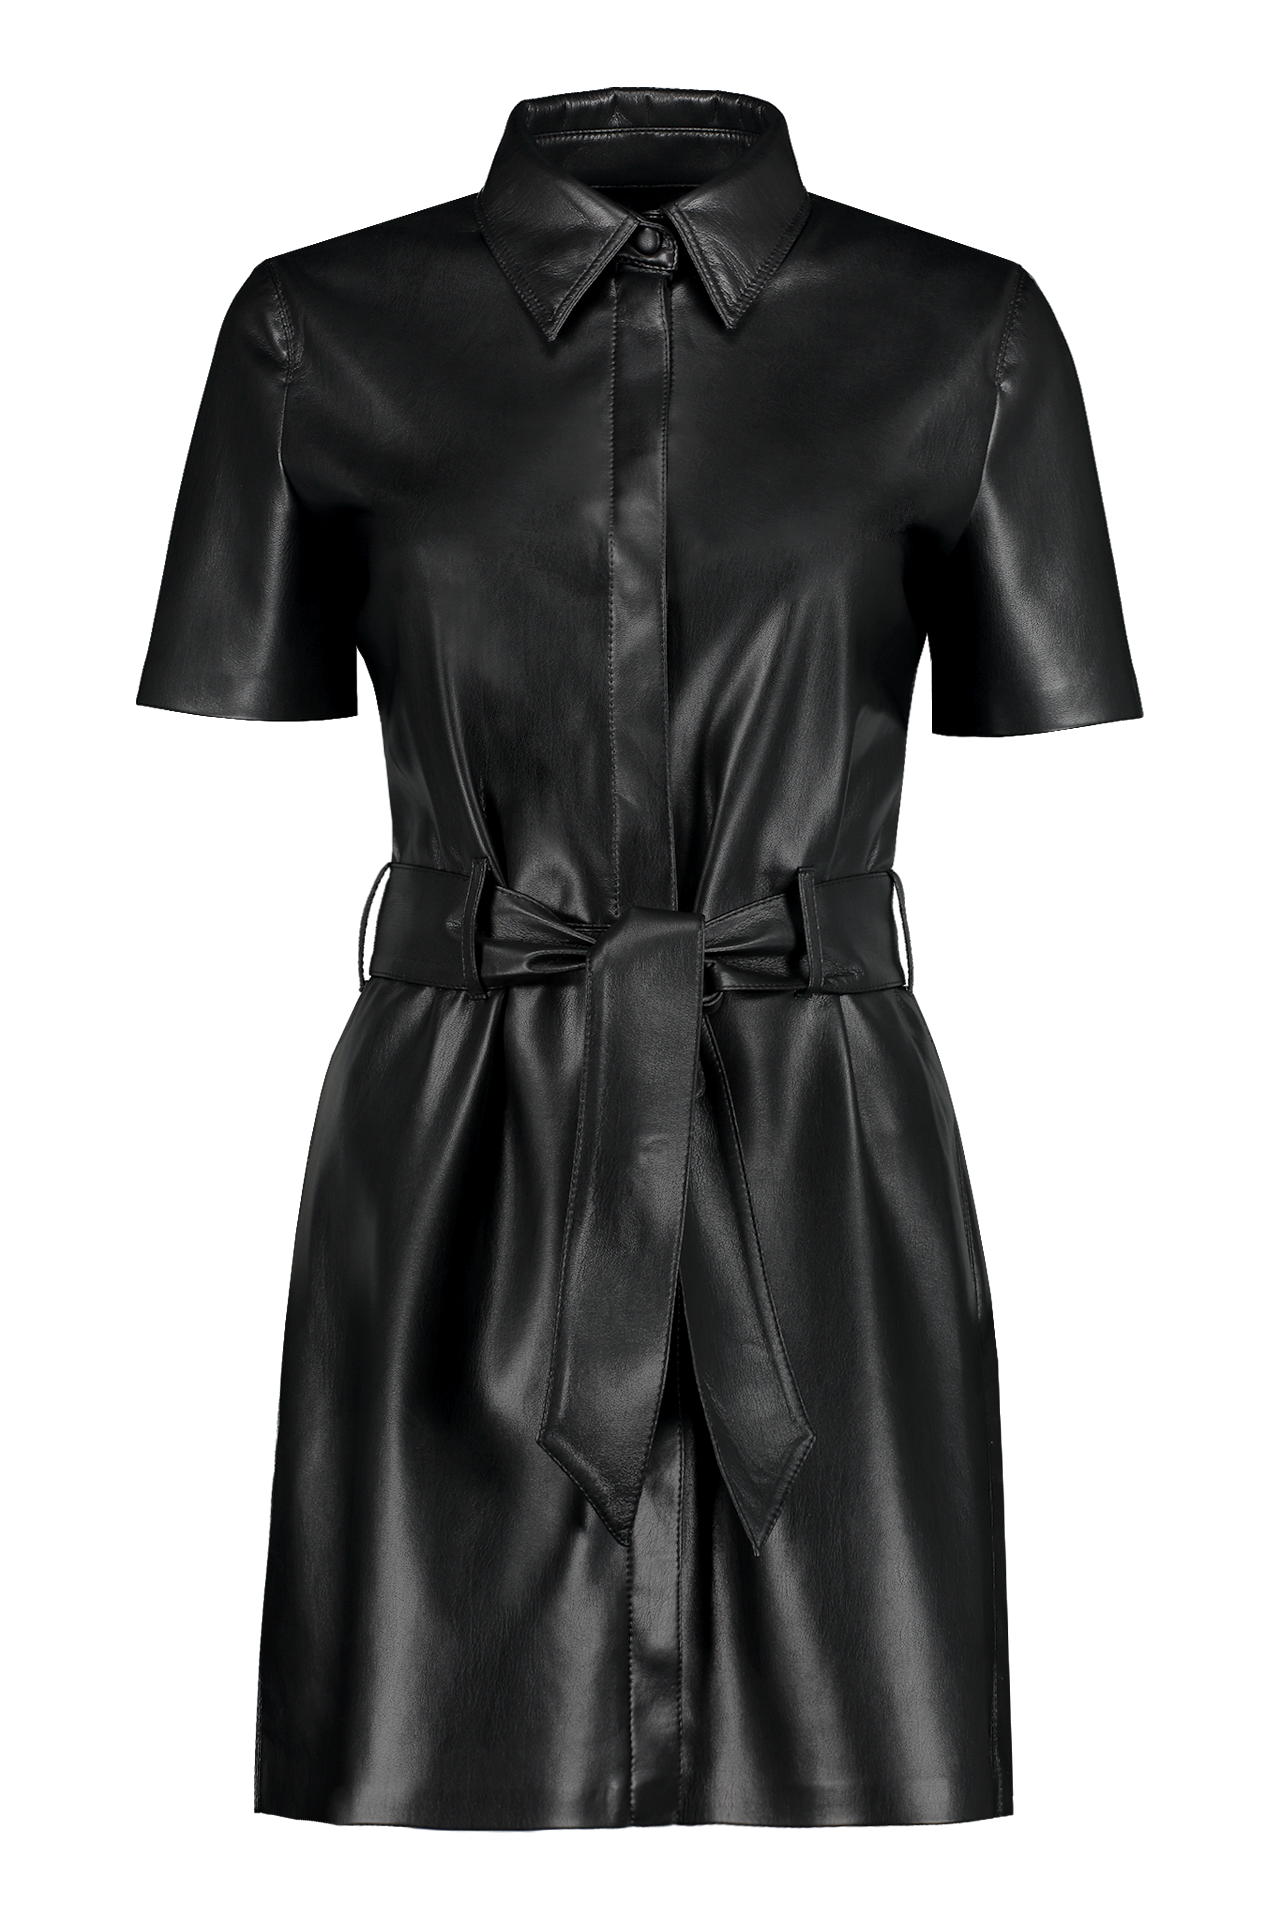 Nanushka Halli Dress Black Front Mannequin Image (6595768090739)